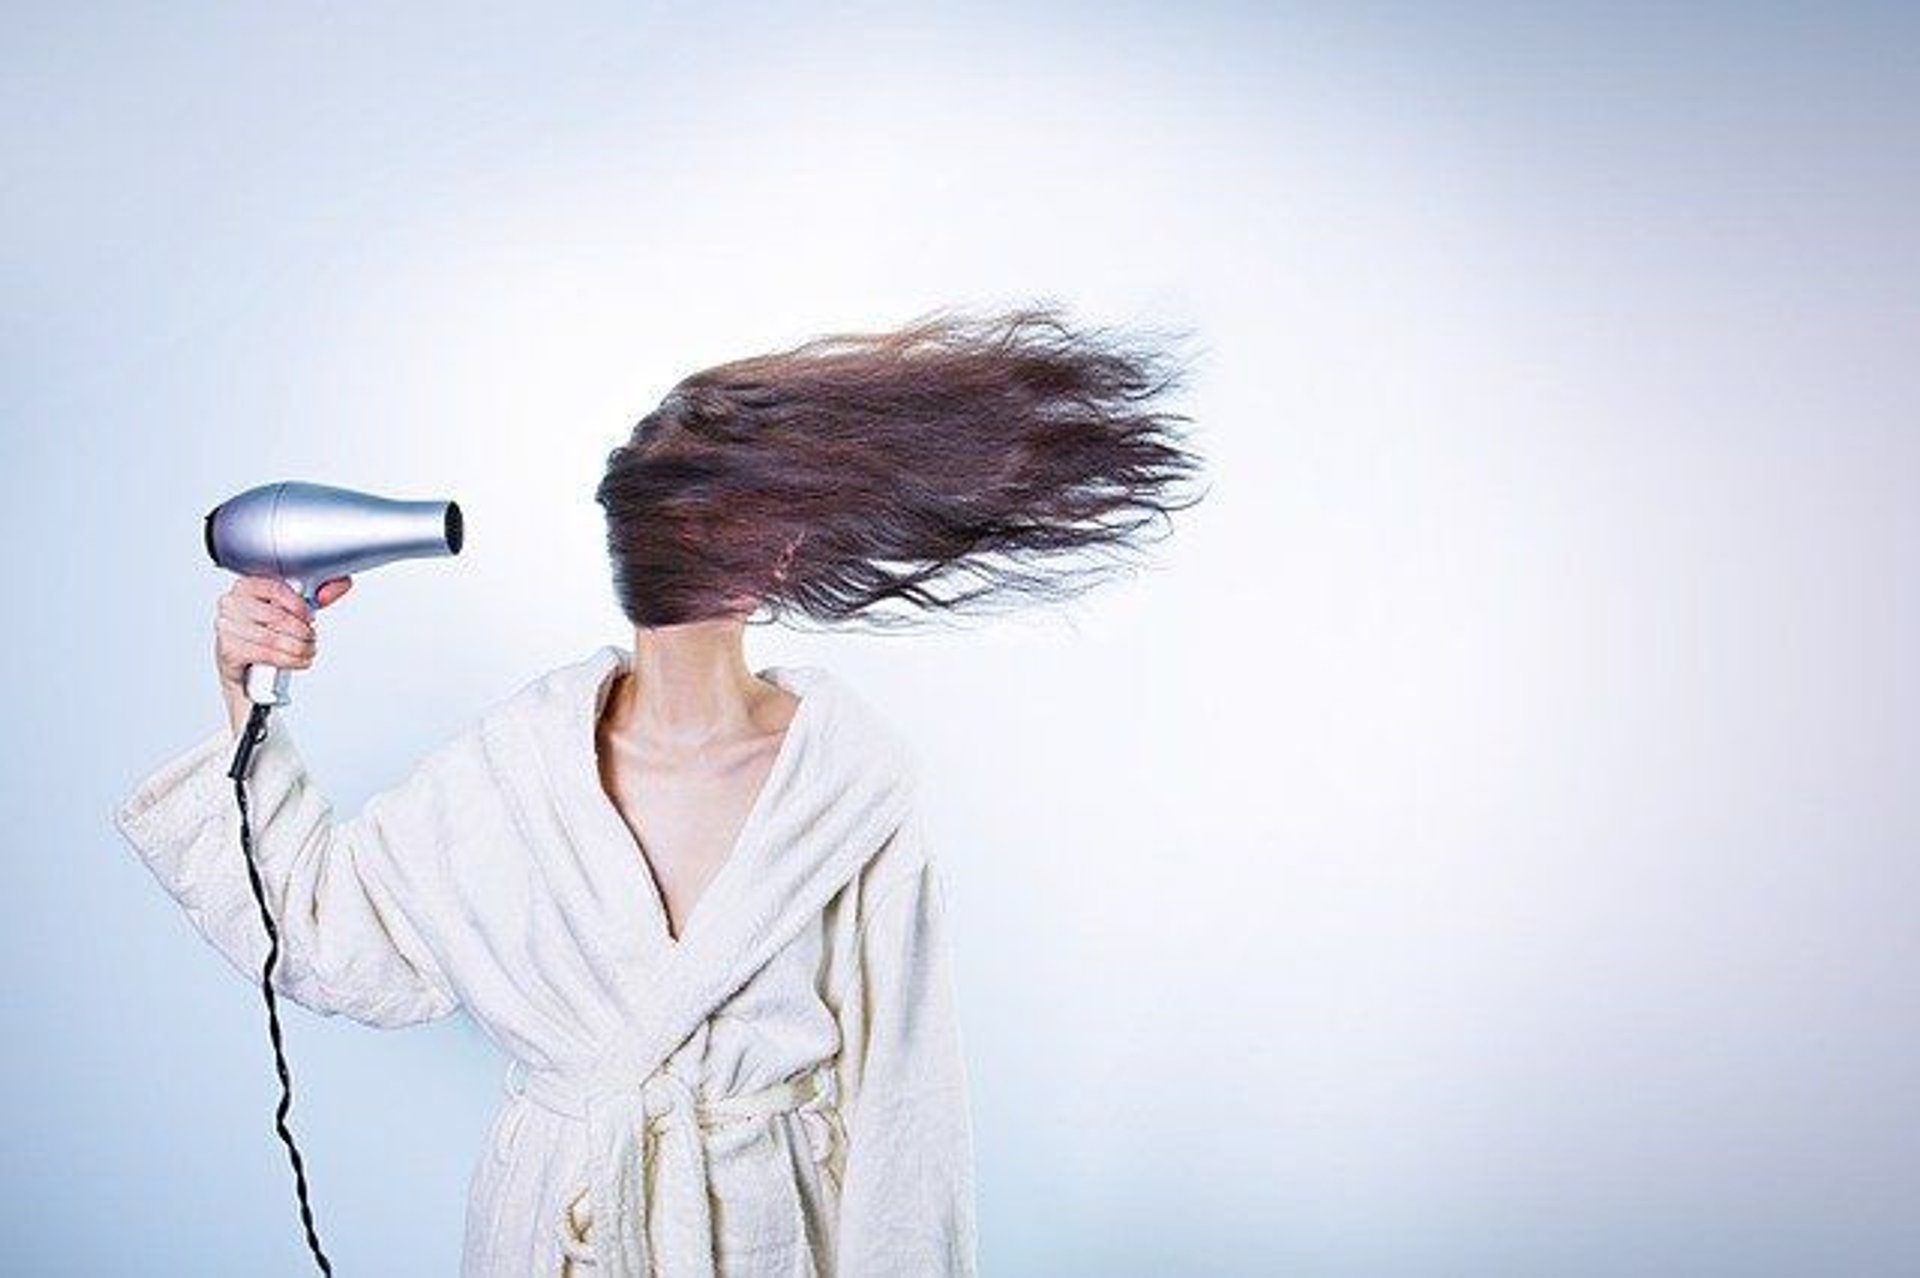 Na wypadanie włosów skarży się coraz więcej osób. Jak się je leczy?